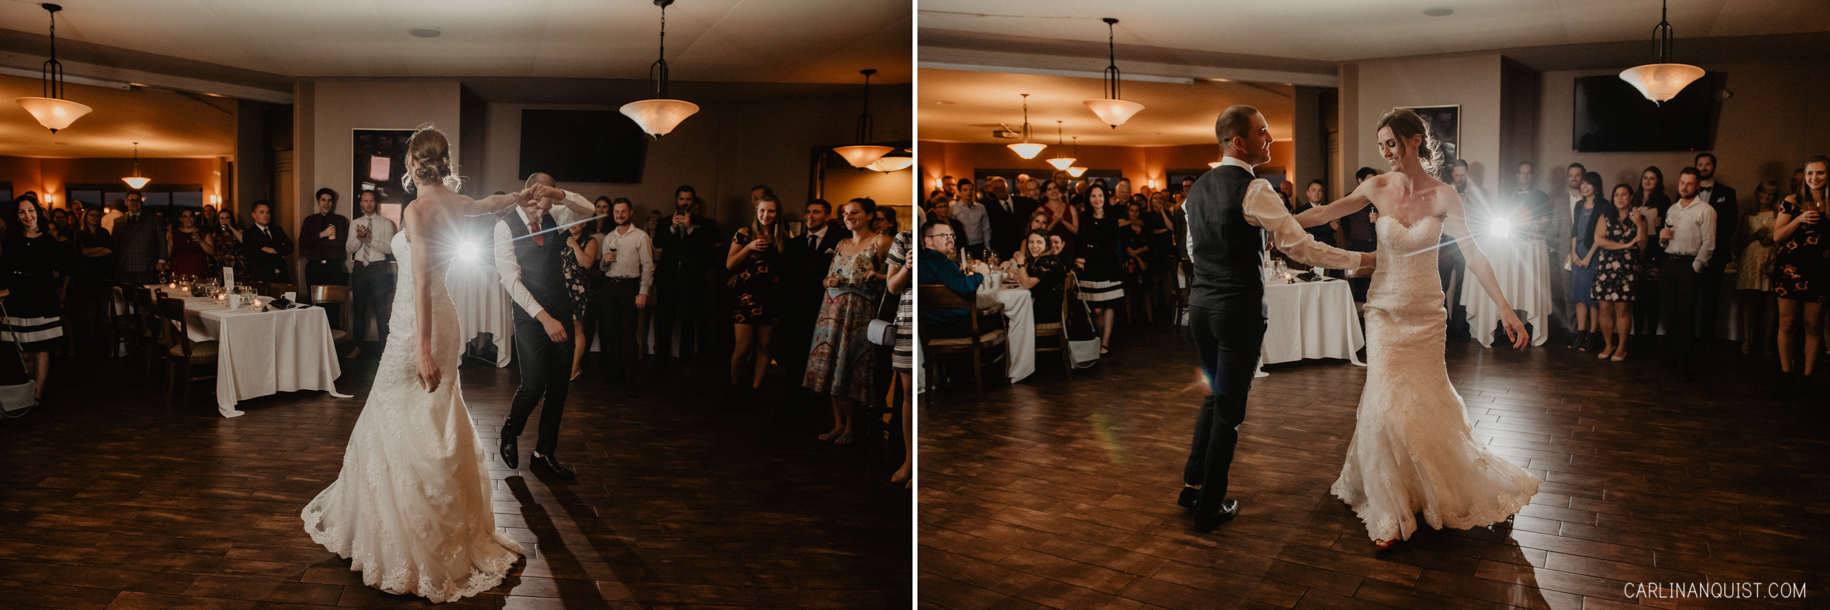 First Dance | Sirocco Golf Club Wedding Photos